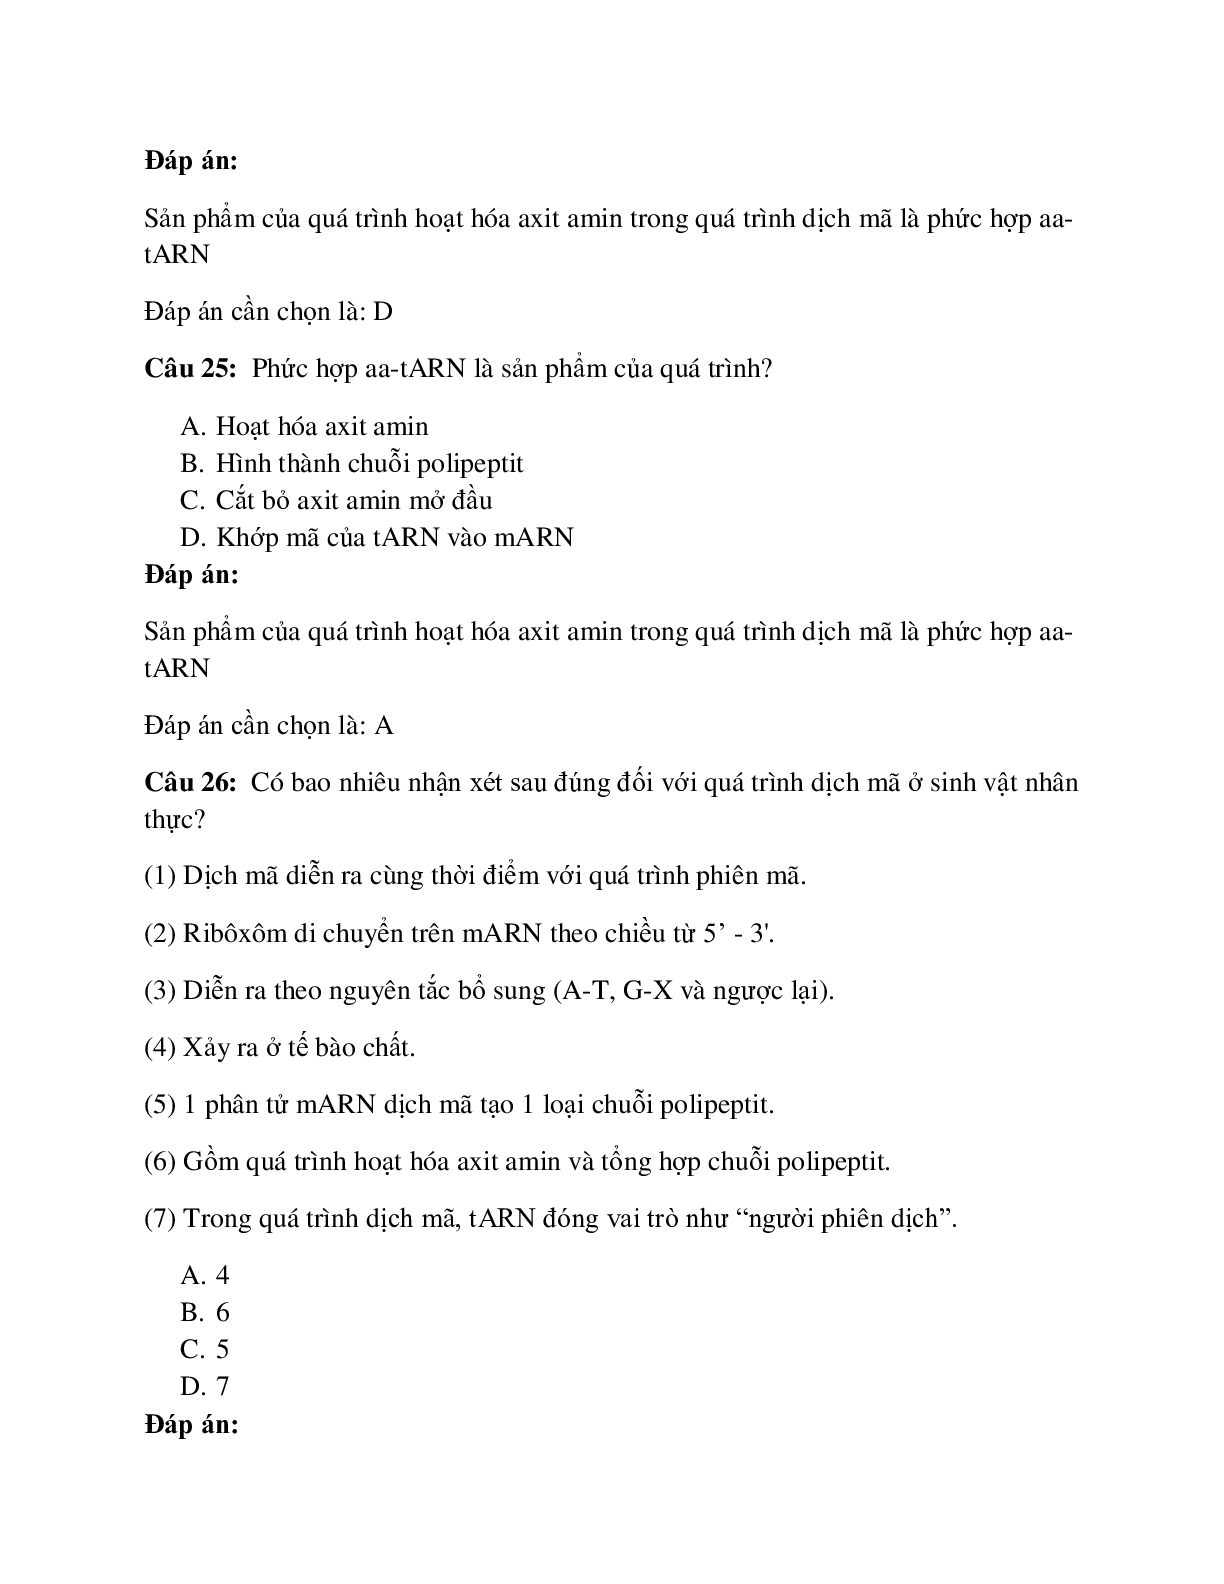 200 câu Trắc nghiệm Sinh học 12 Bài 2 có đáp án 2023: Phiên mã và dịch mã (trang 9)